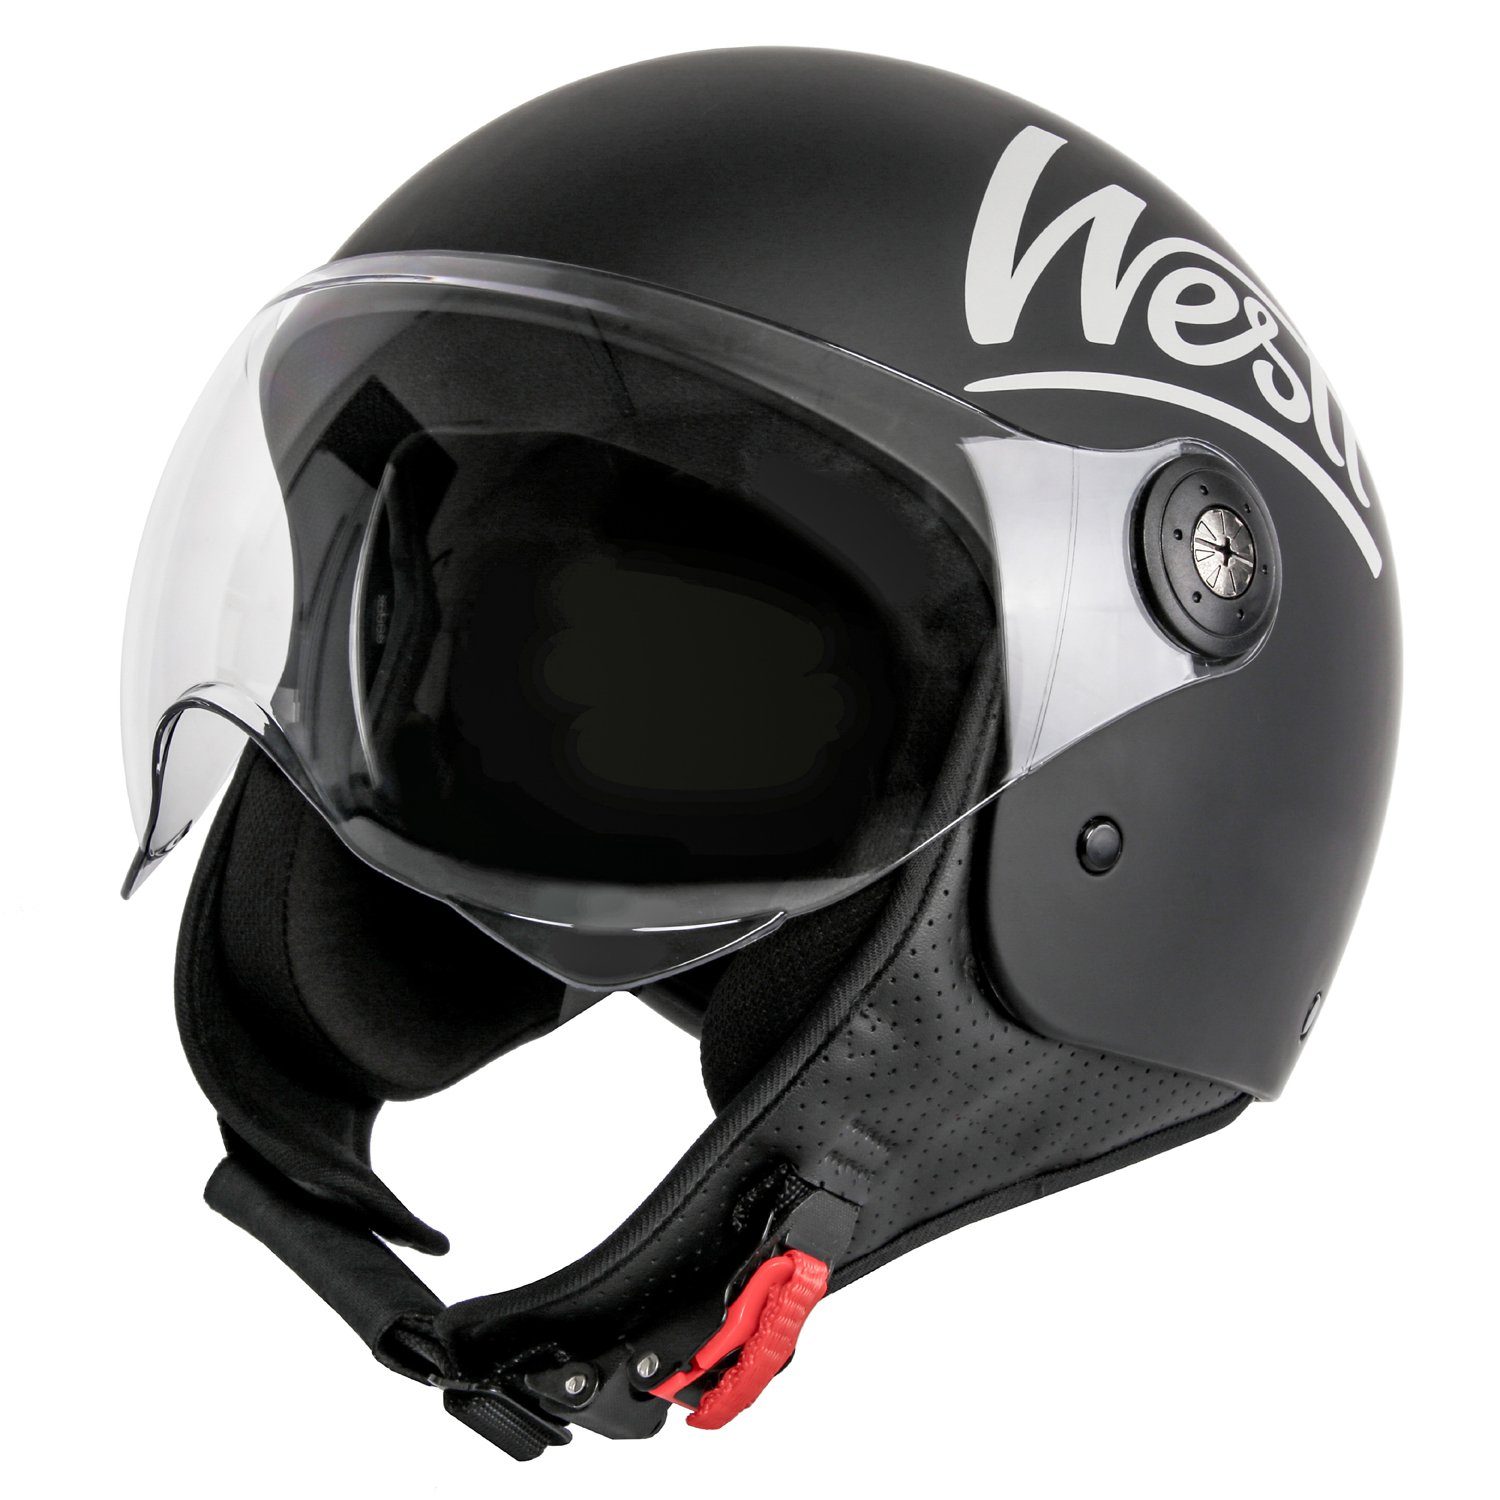 Westt Motorradhelm Classic, Rollerhelm mit Visier im Vintage Stil - Jet Helm  Junge mit höchsten Sicherheitsstandards